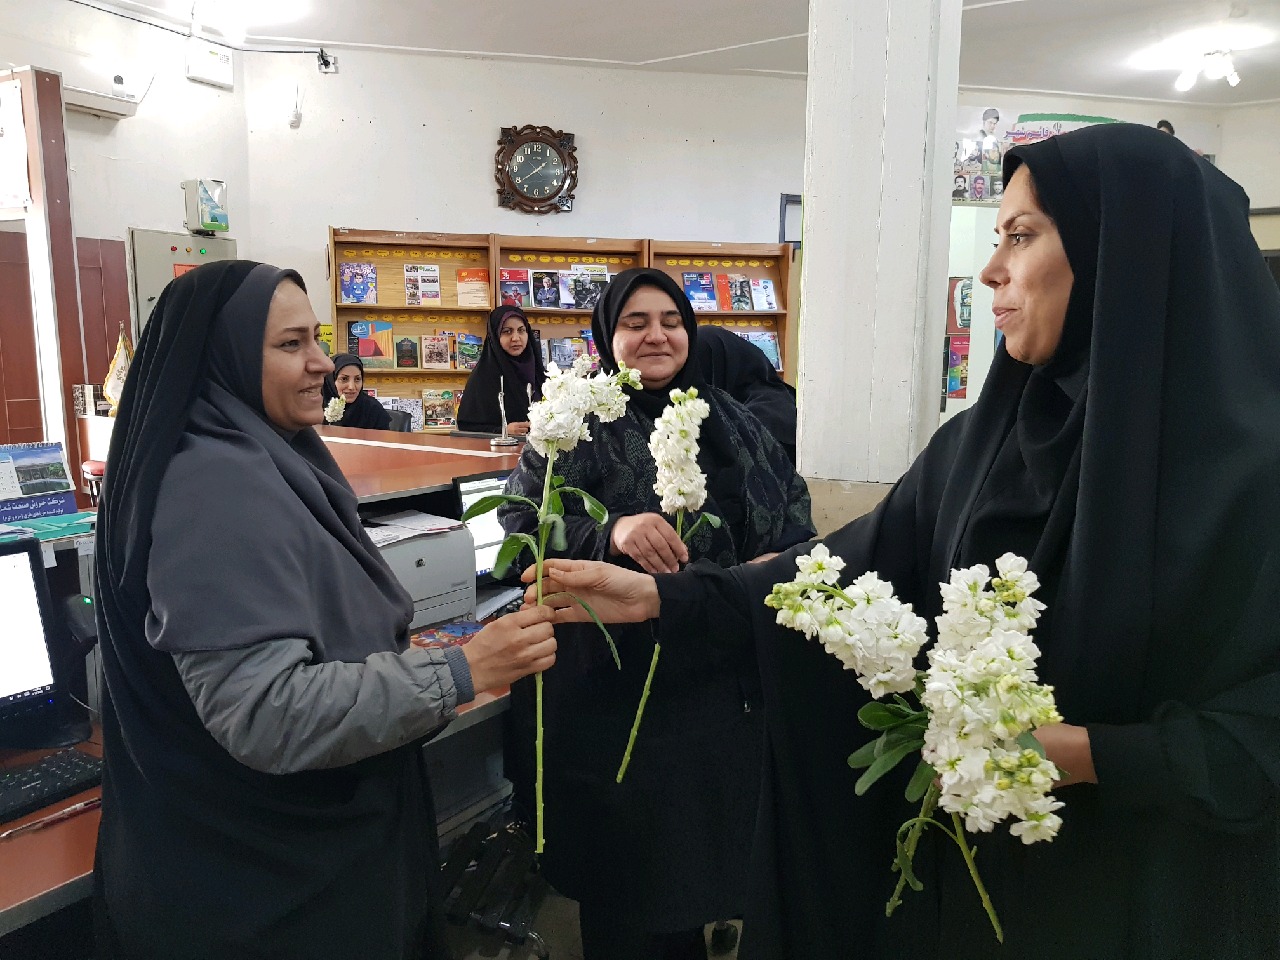 تقدیر رئیس اداره کتابخانه های عمومی از بانوان همکار به مناسبت روز زن در کتابخانه عمومی جمشید احمدی